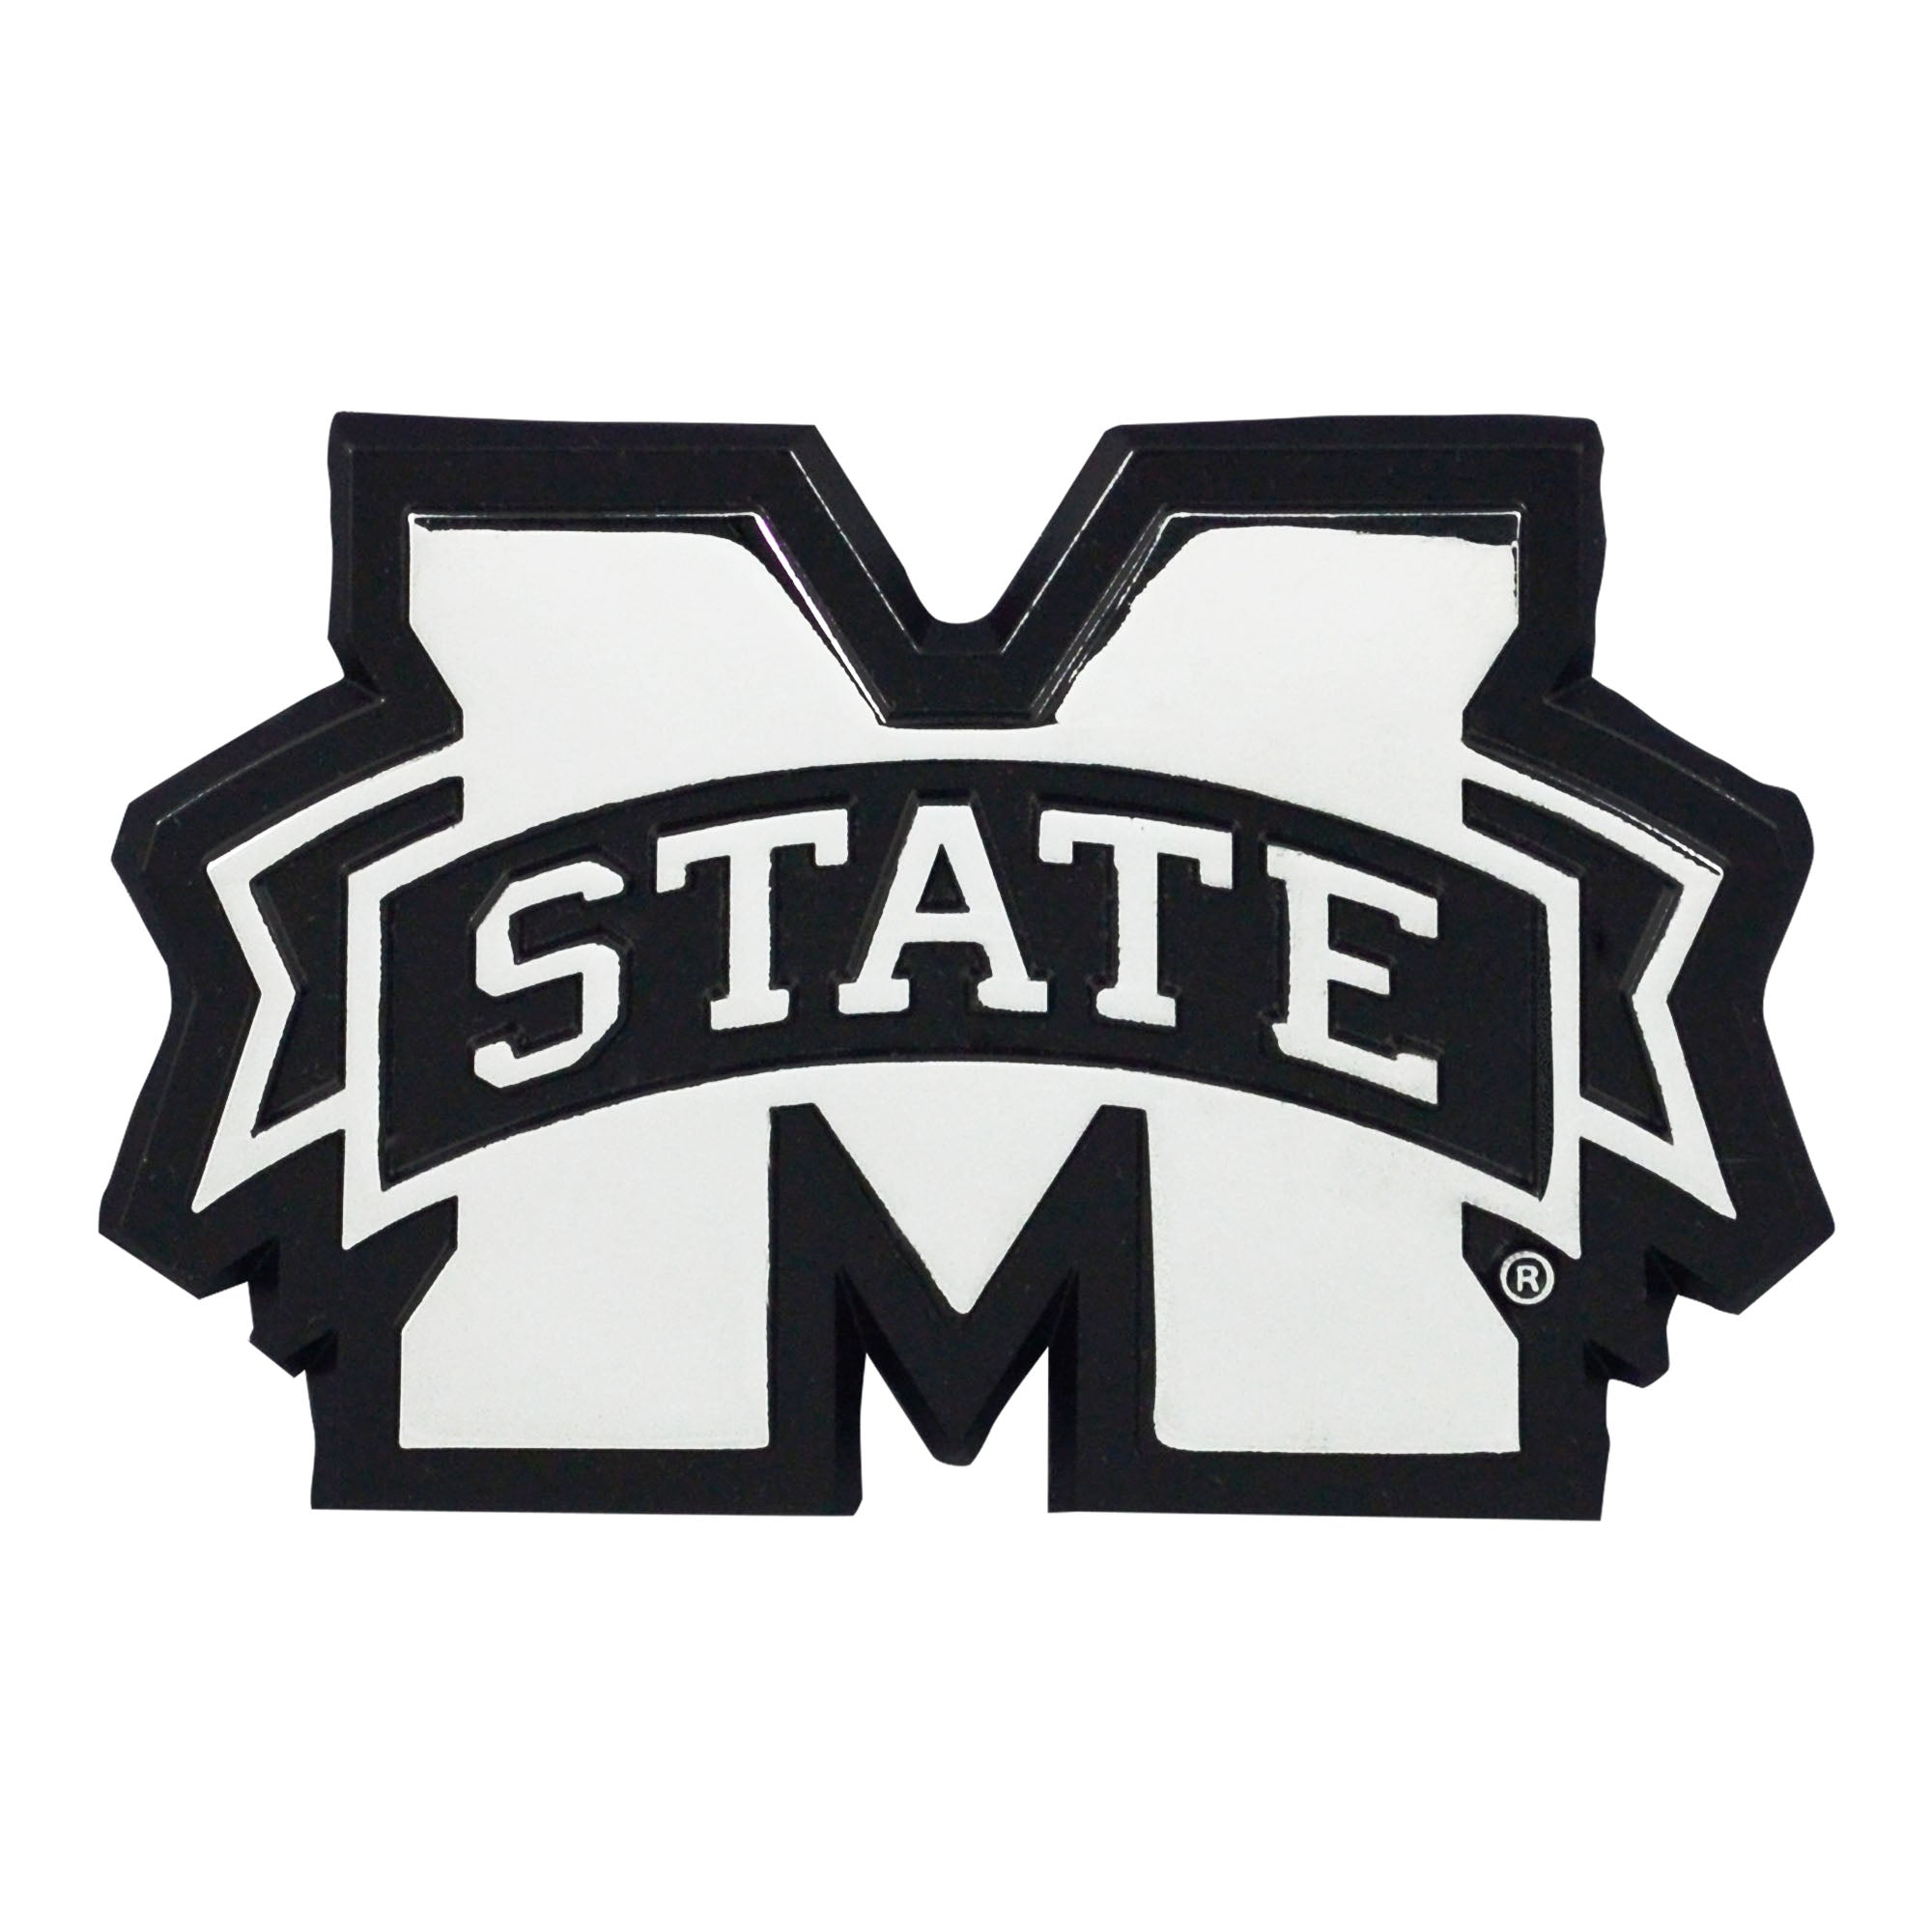 FANMATS, Mississippi State University 3D Chromed Metal Emblem